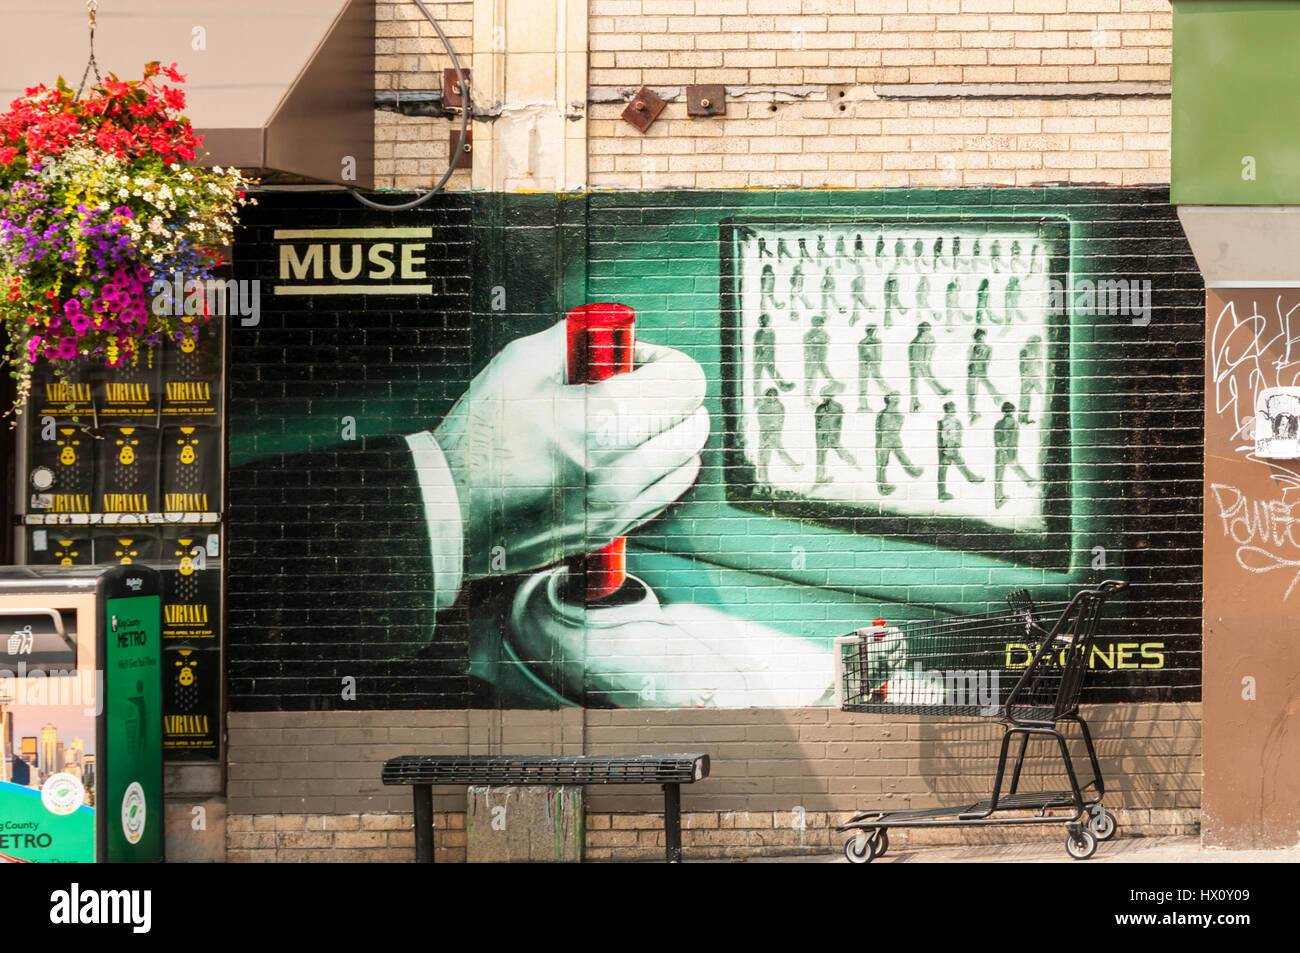 Une publicité peinte sur un mur à West Seattle pour drones, le 7ème album  du groupe de rock anglais Muse Photo Stock - Alamy